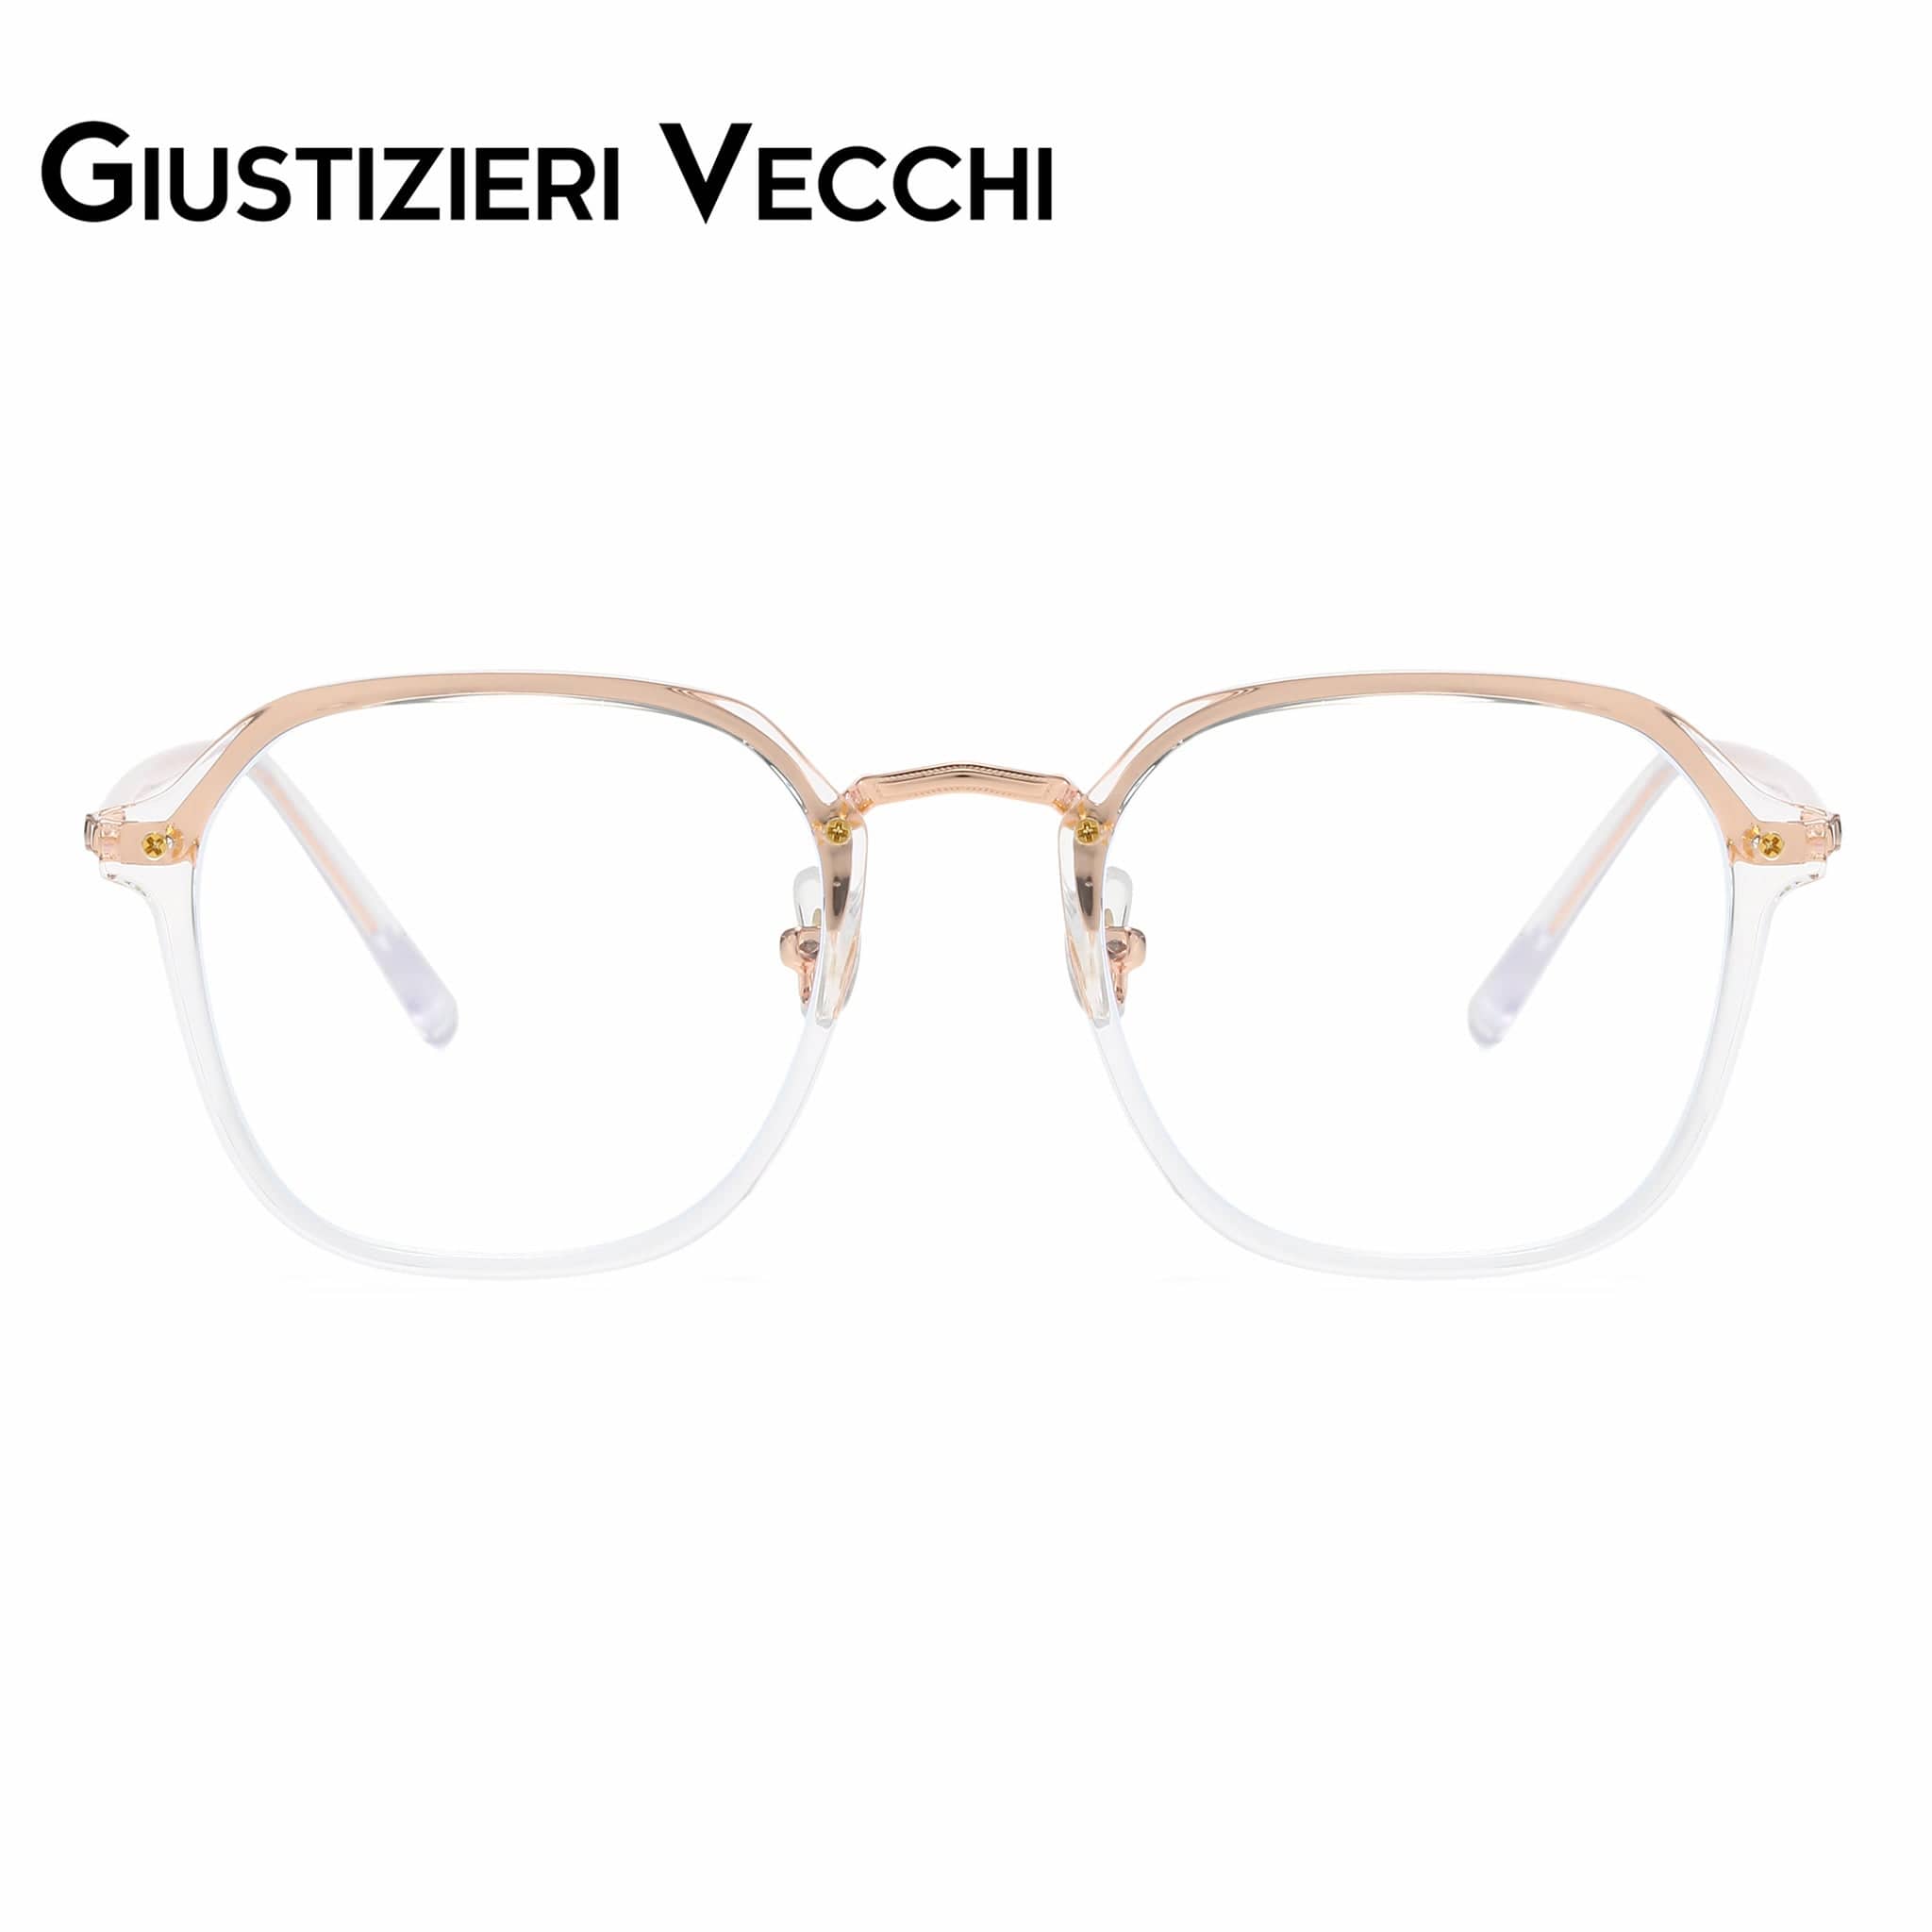 GIUSTIZIERI VECCHI Eyeglasses Small / Rose Gold ModaChic Uno